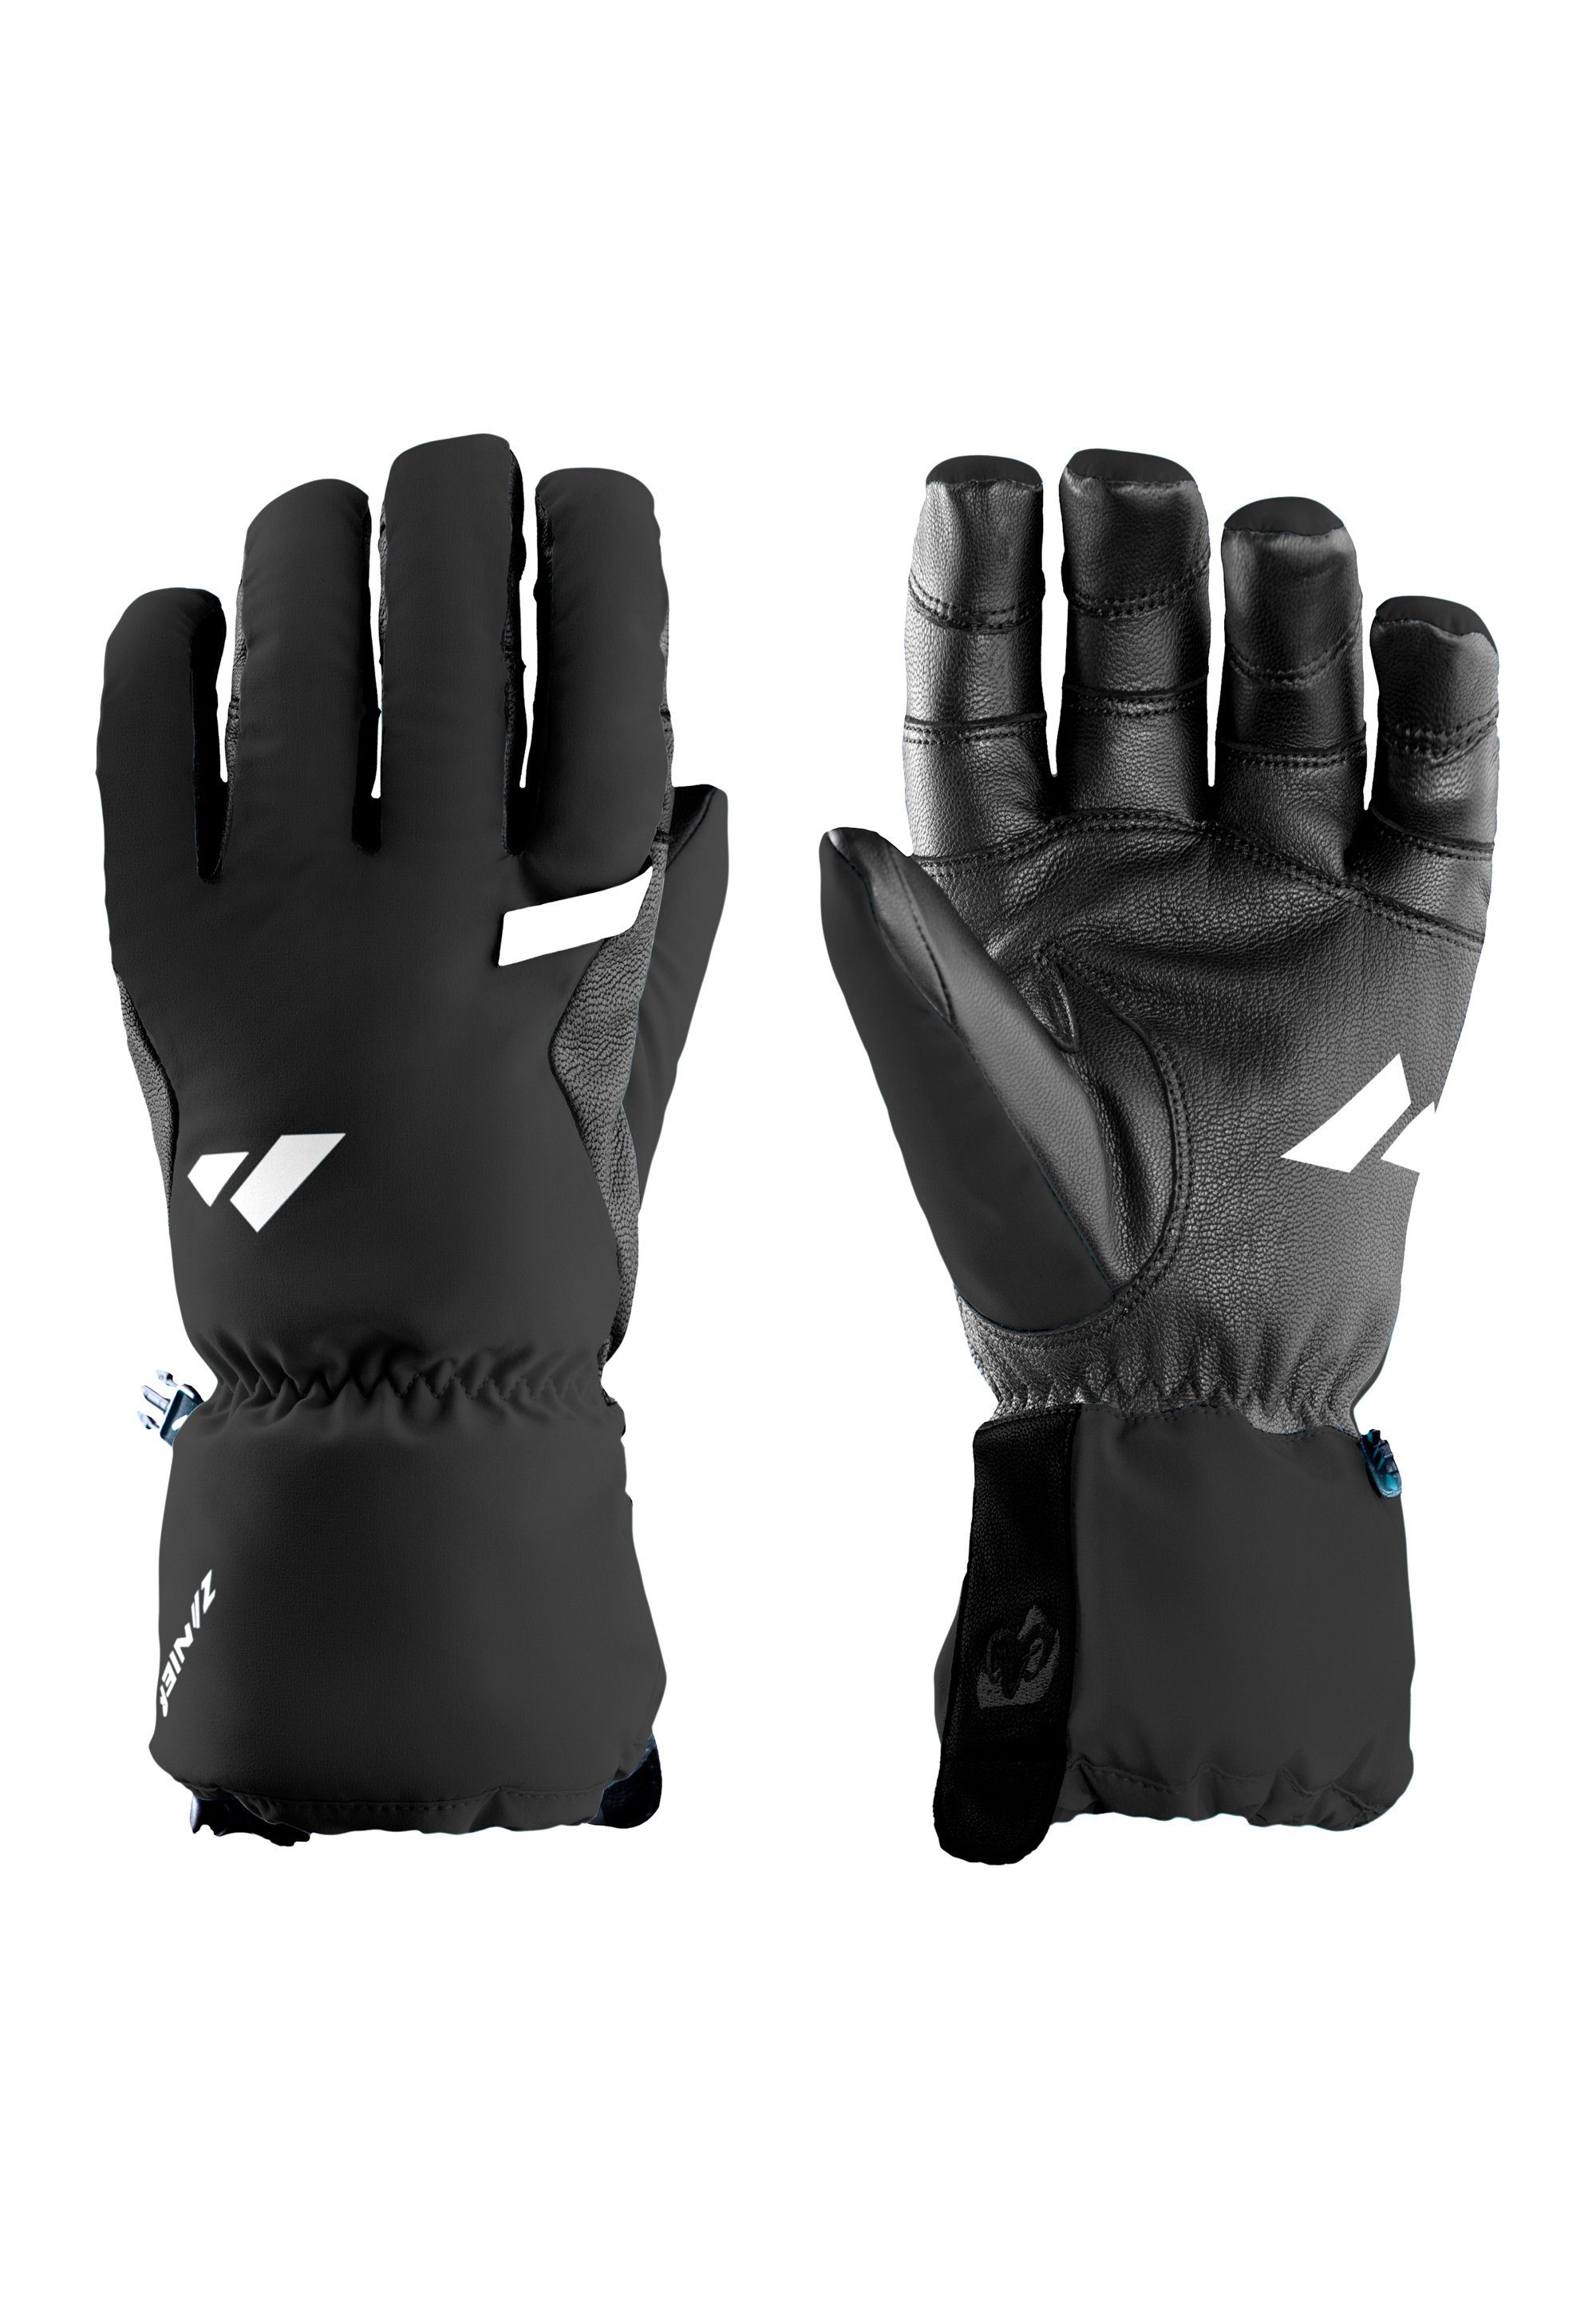 We Zanier WILDSPITZE.TW black Multisporthandschuhe gloves focus on